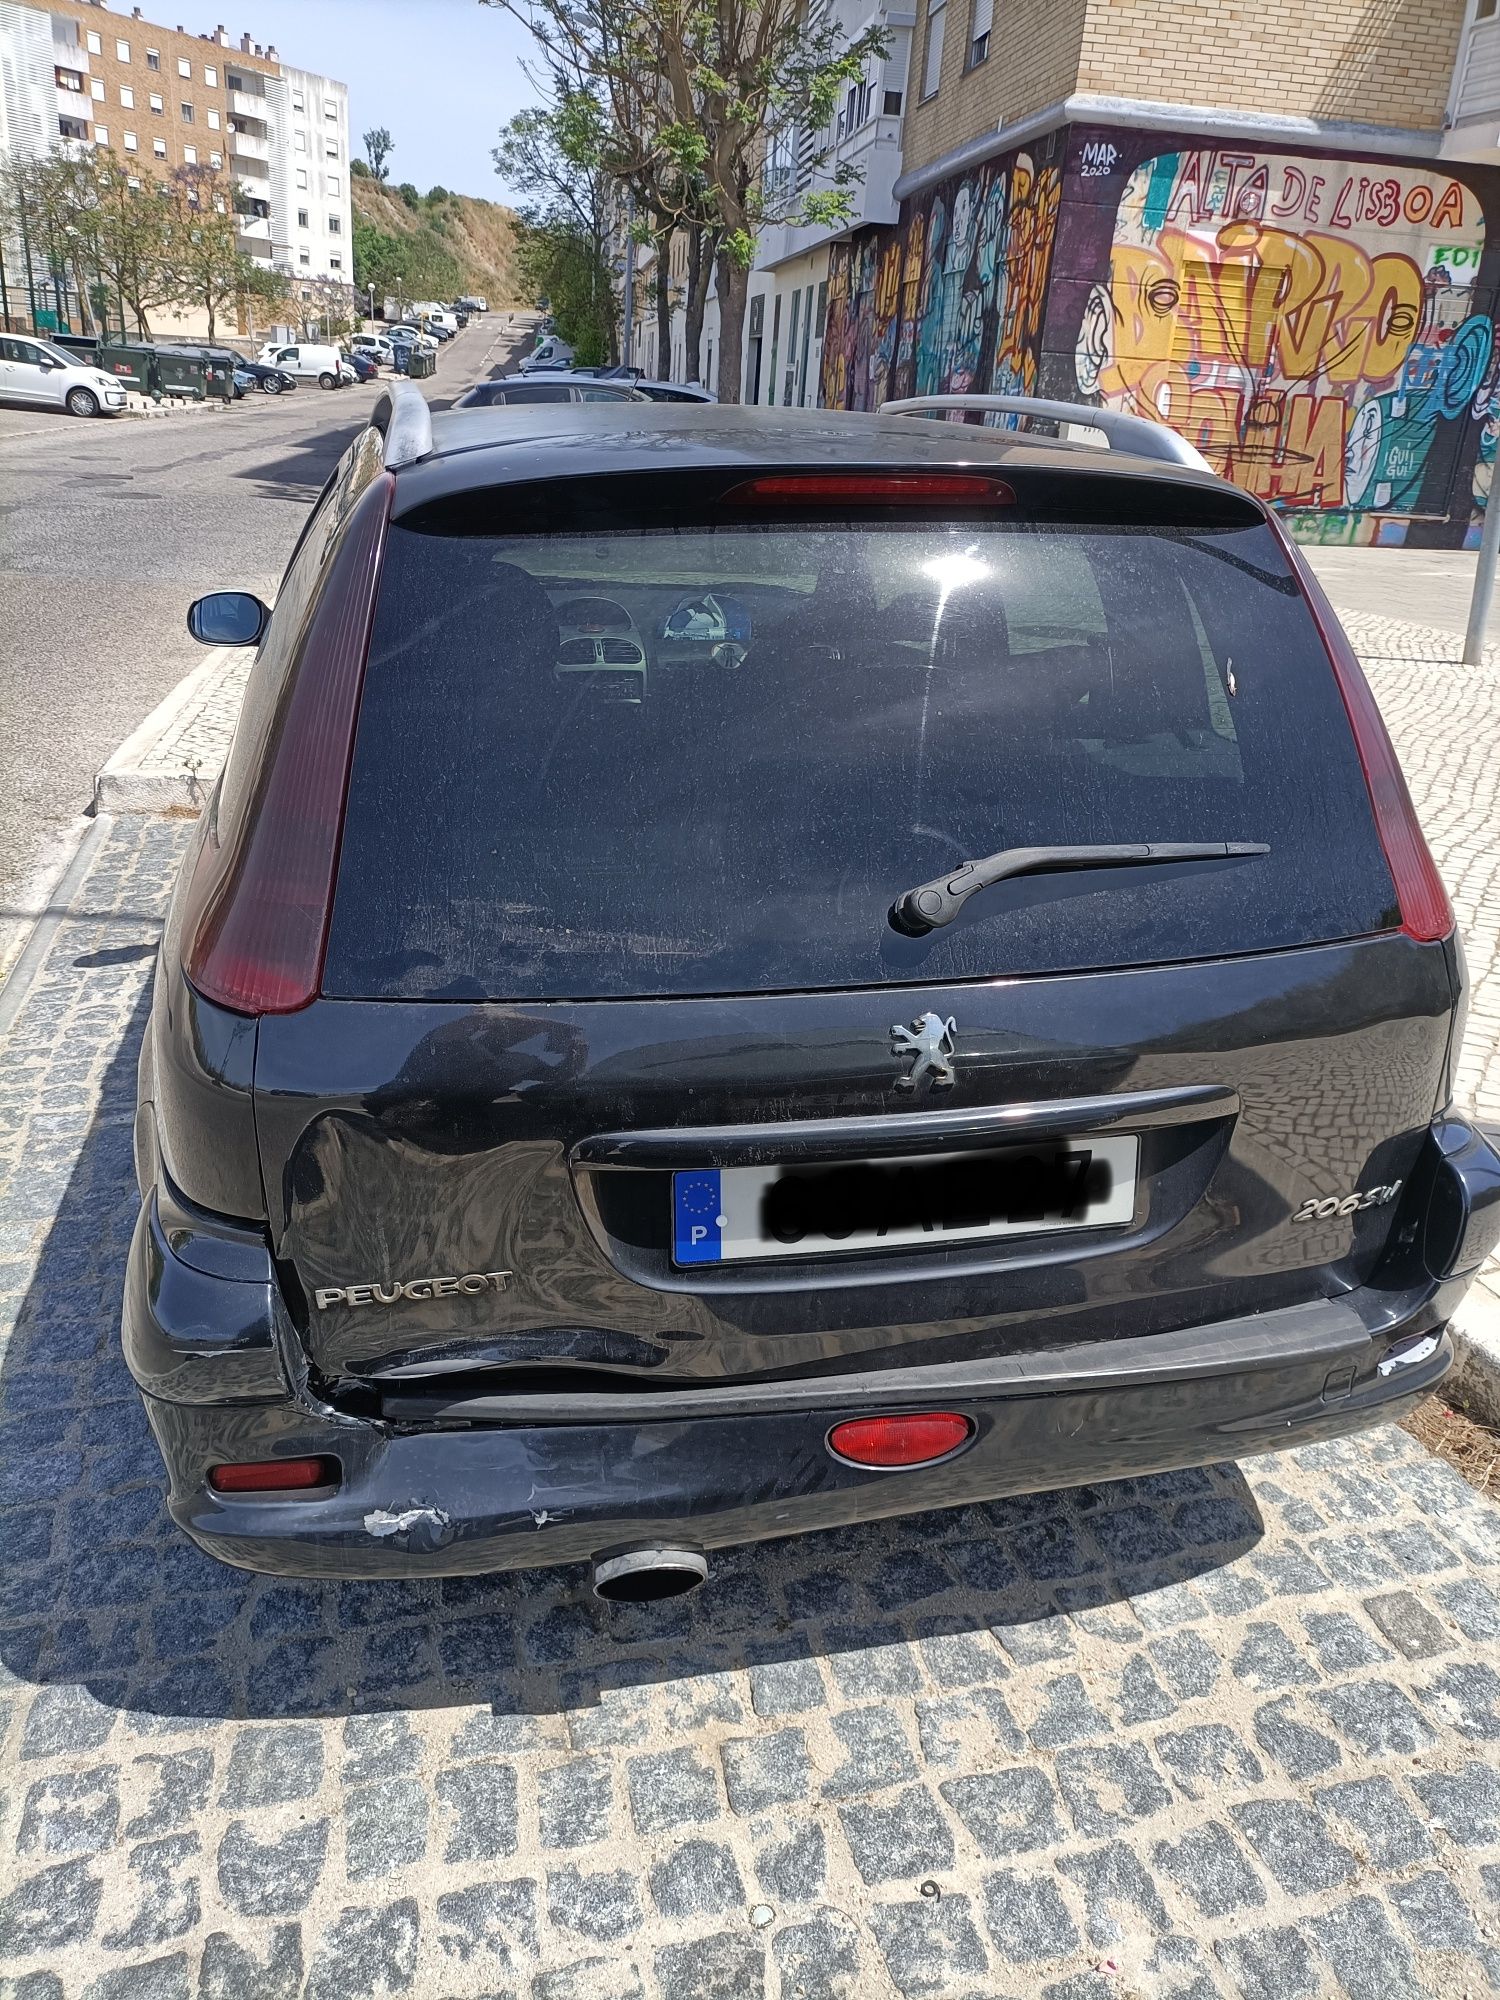 Peugeot 1.4 diesel acidentado radiador furado